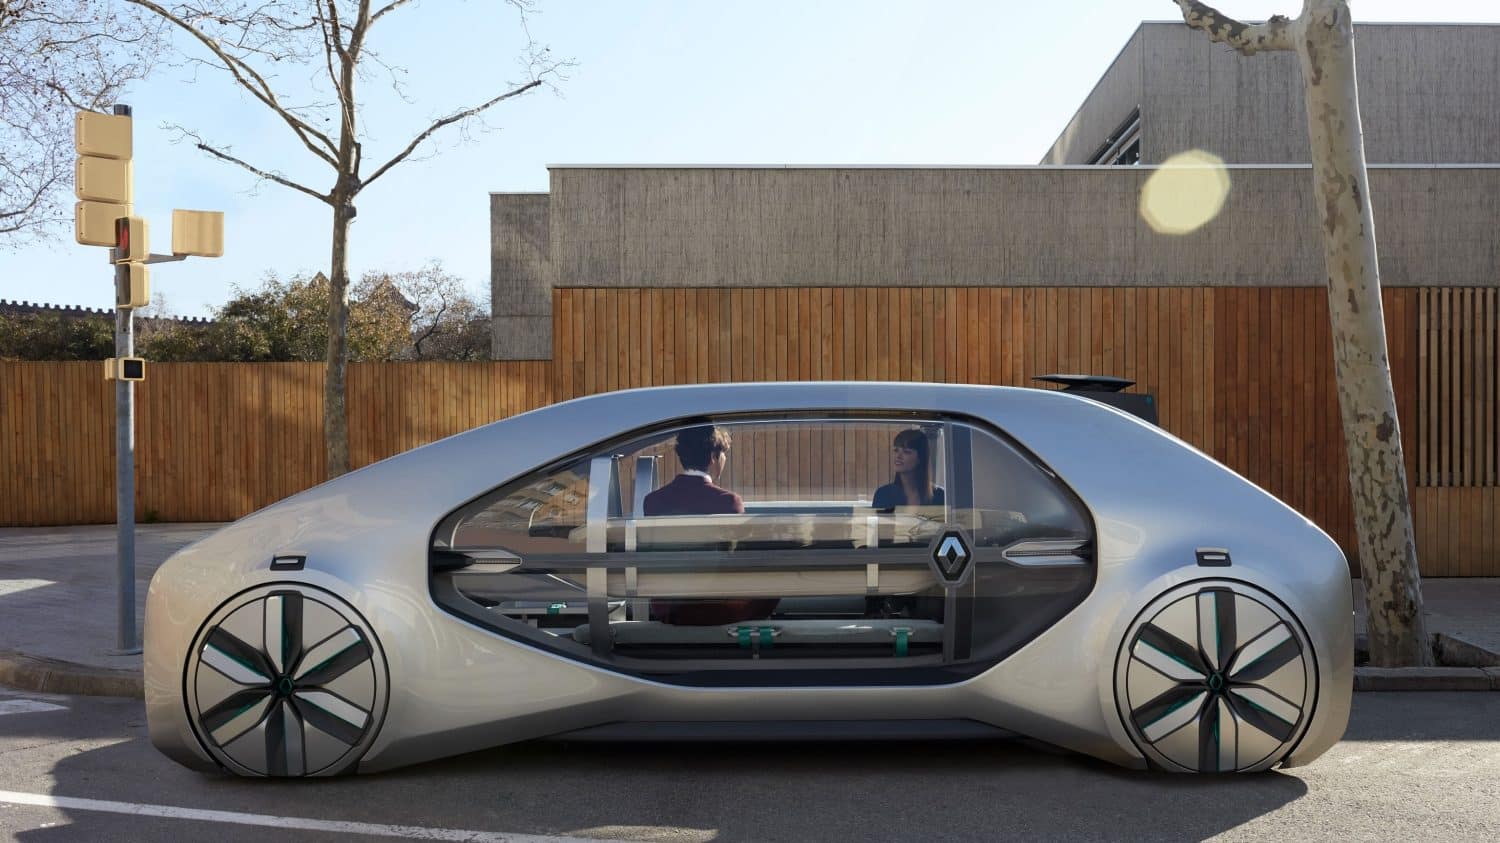 framtidens konceptbilar stadstransport